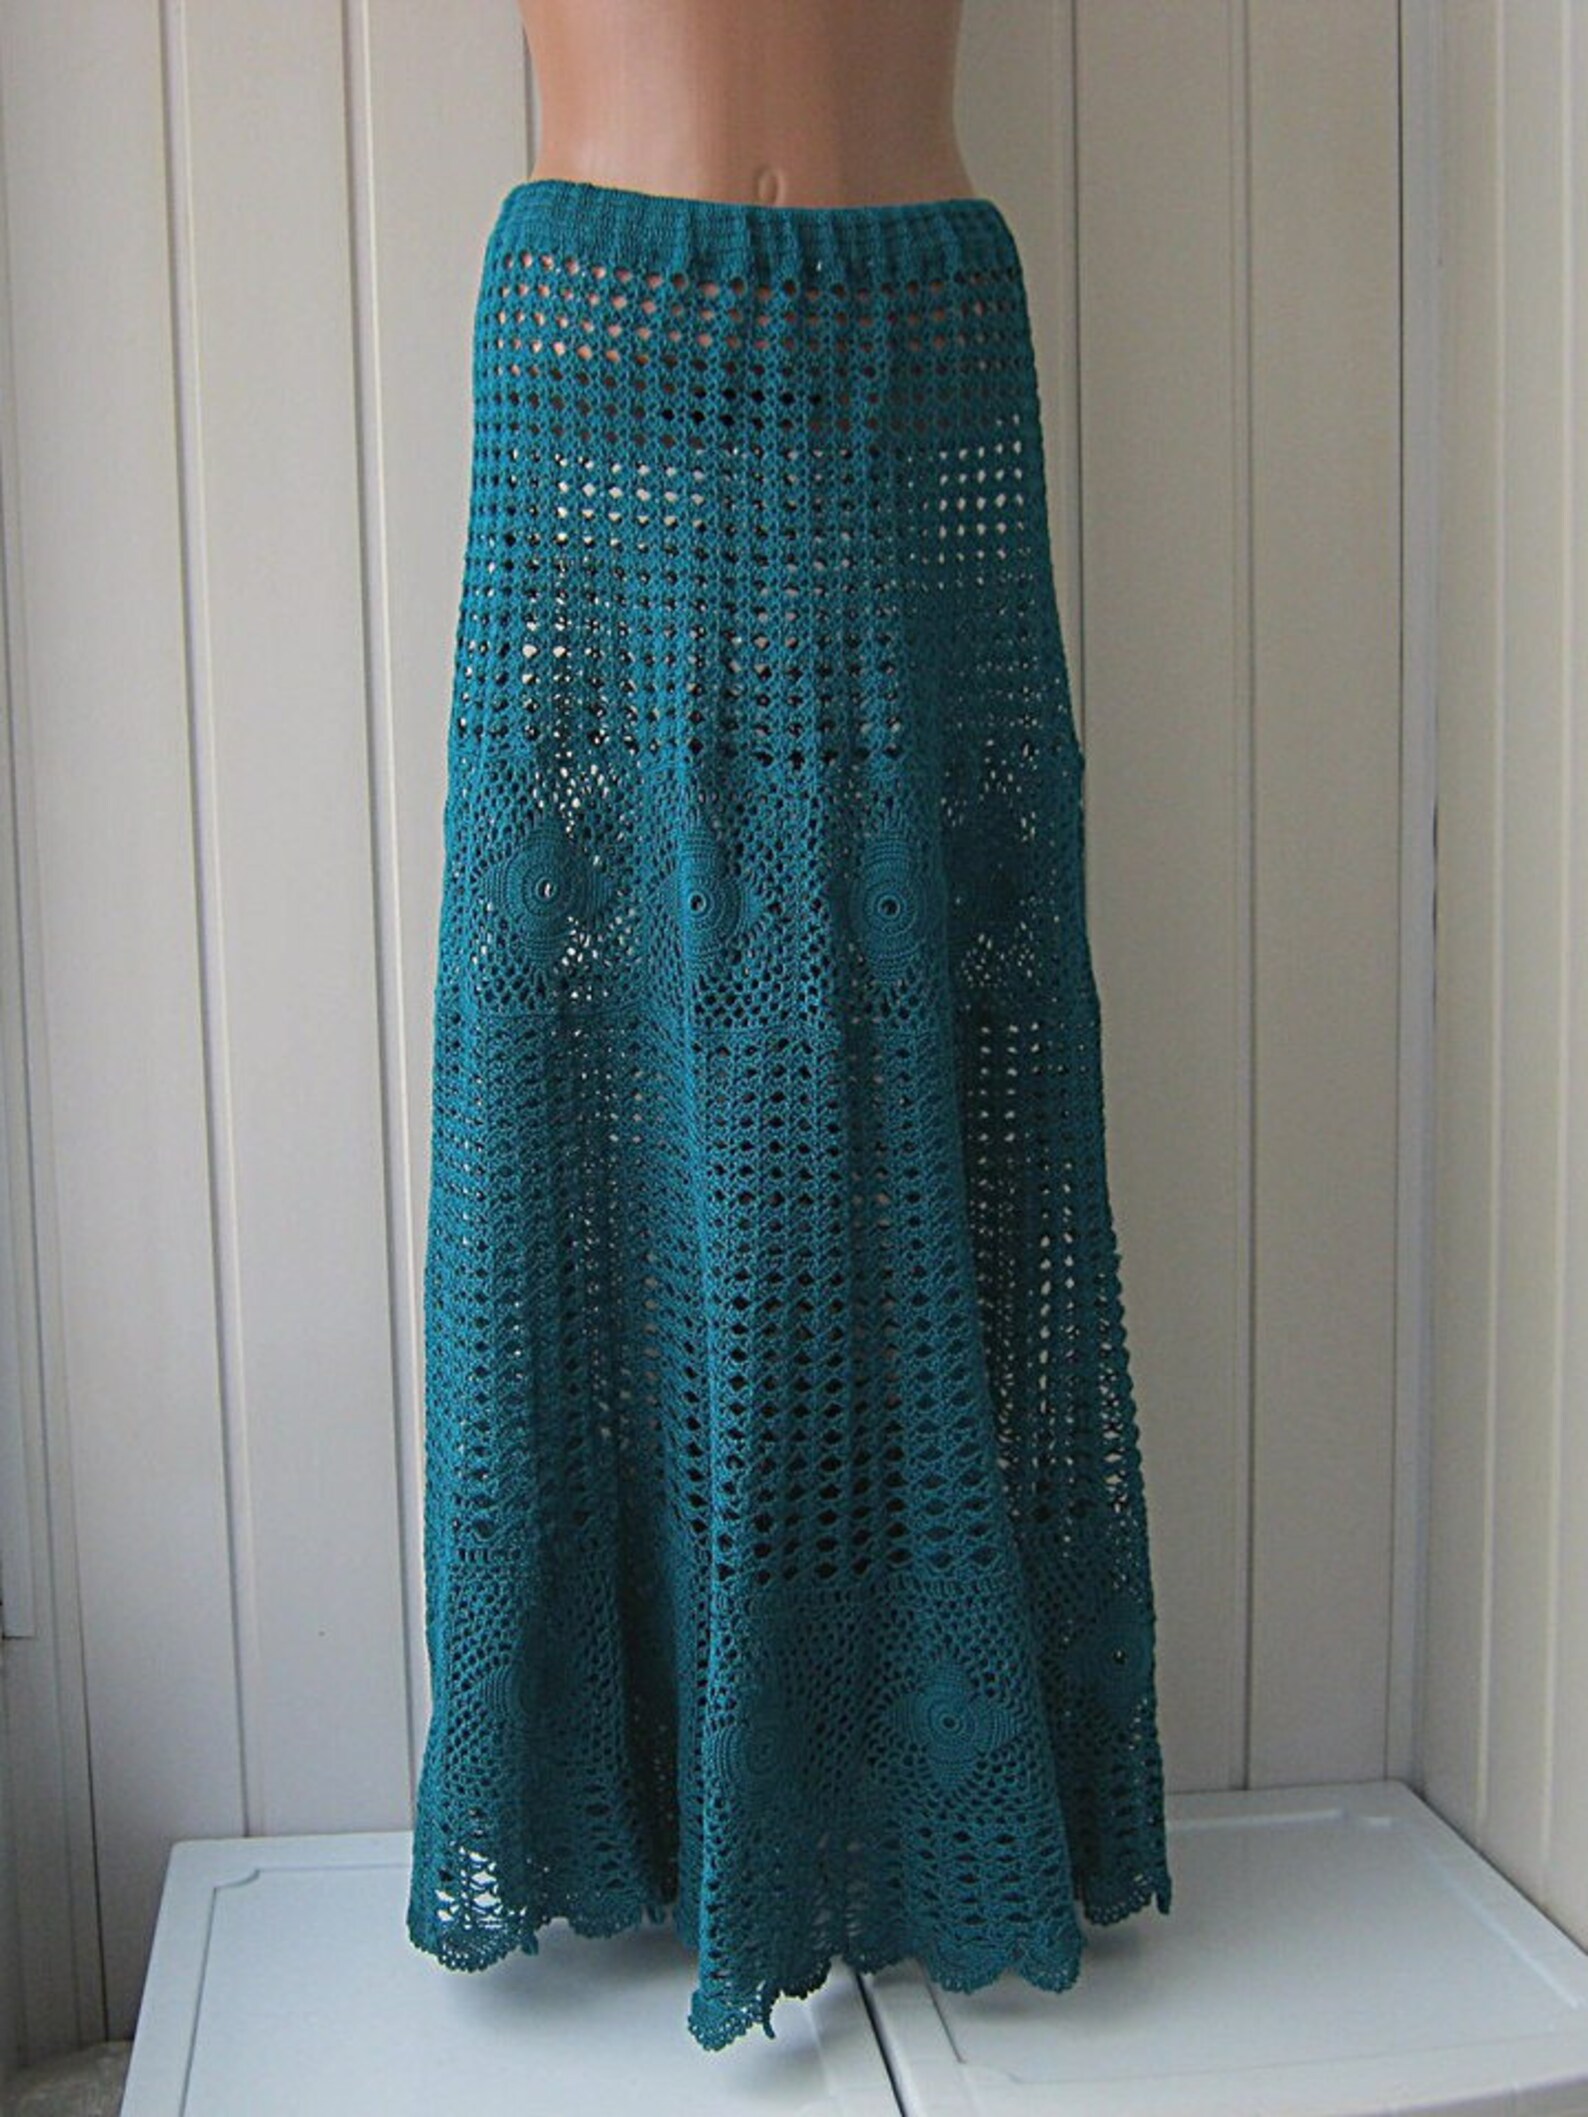 Boho clothes Skirt lace Skirt green Skirt handmade Long | Etsy